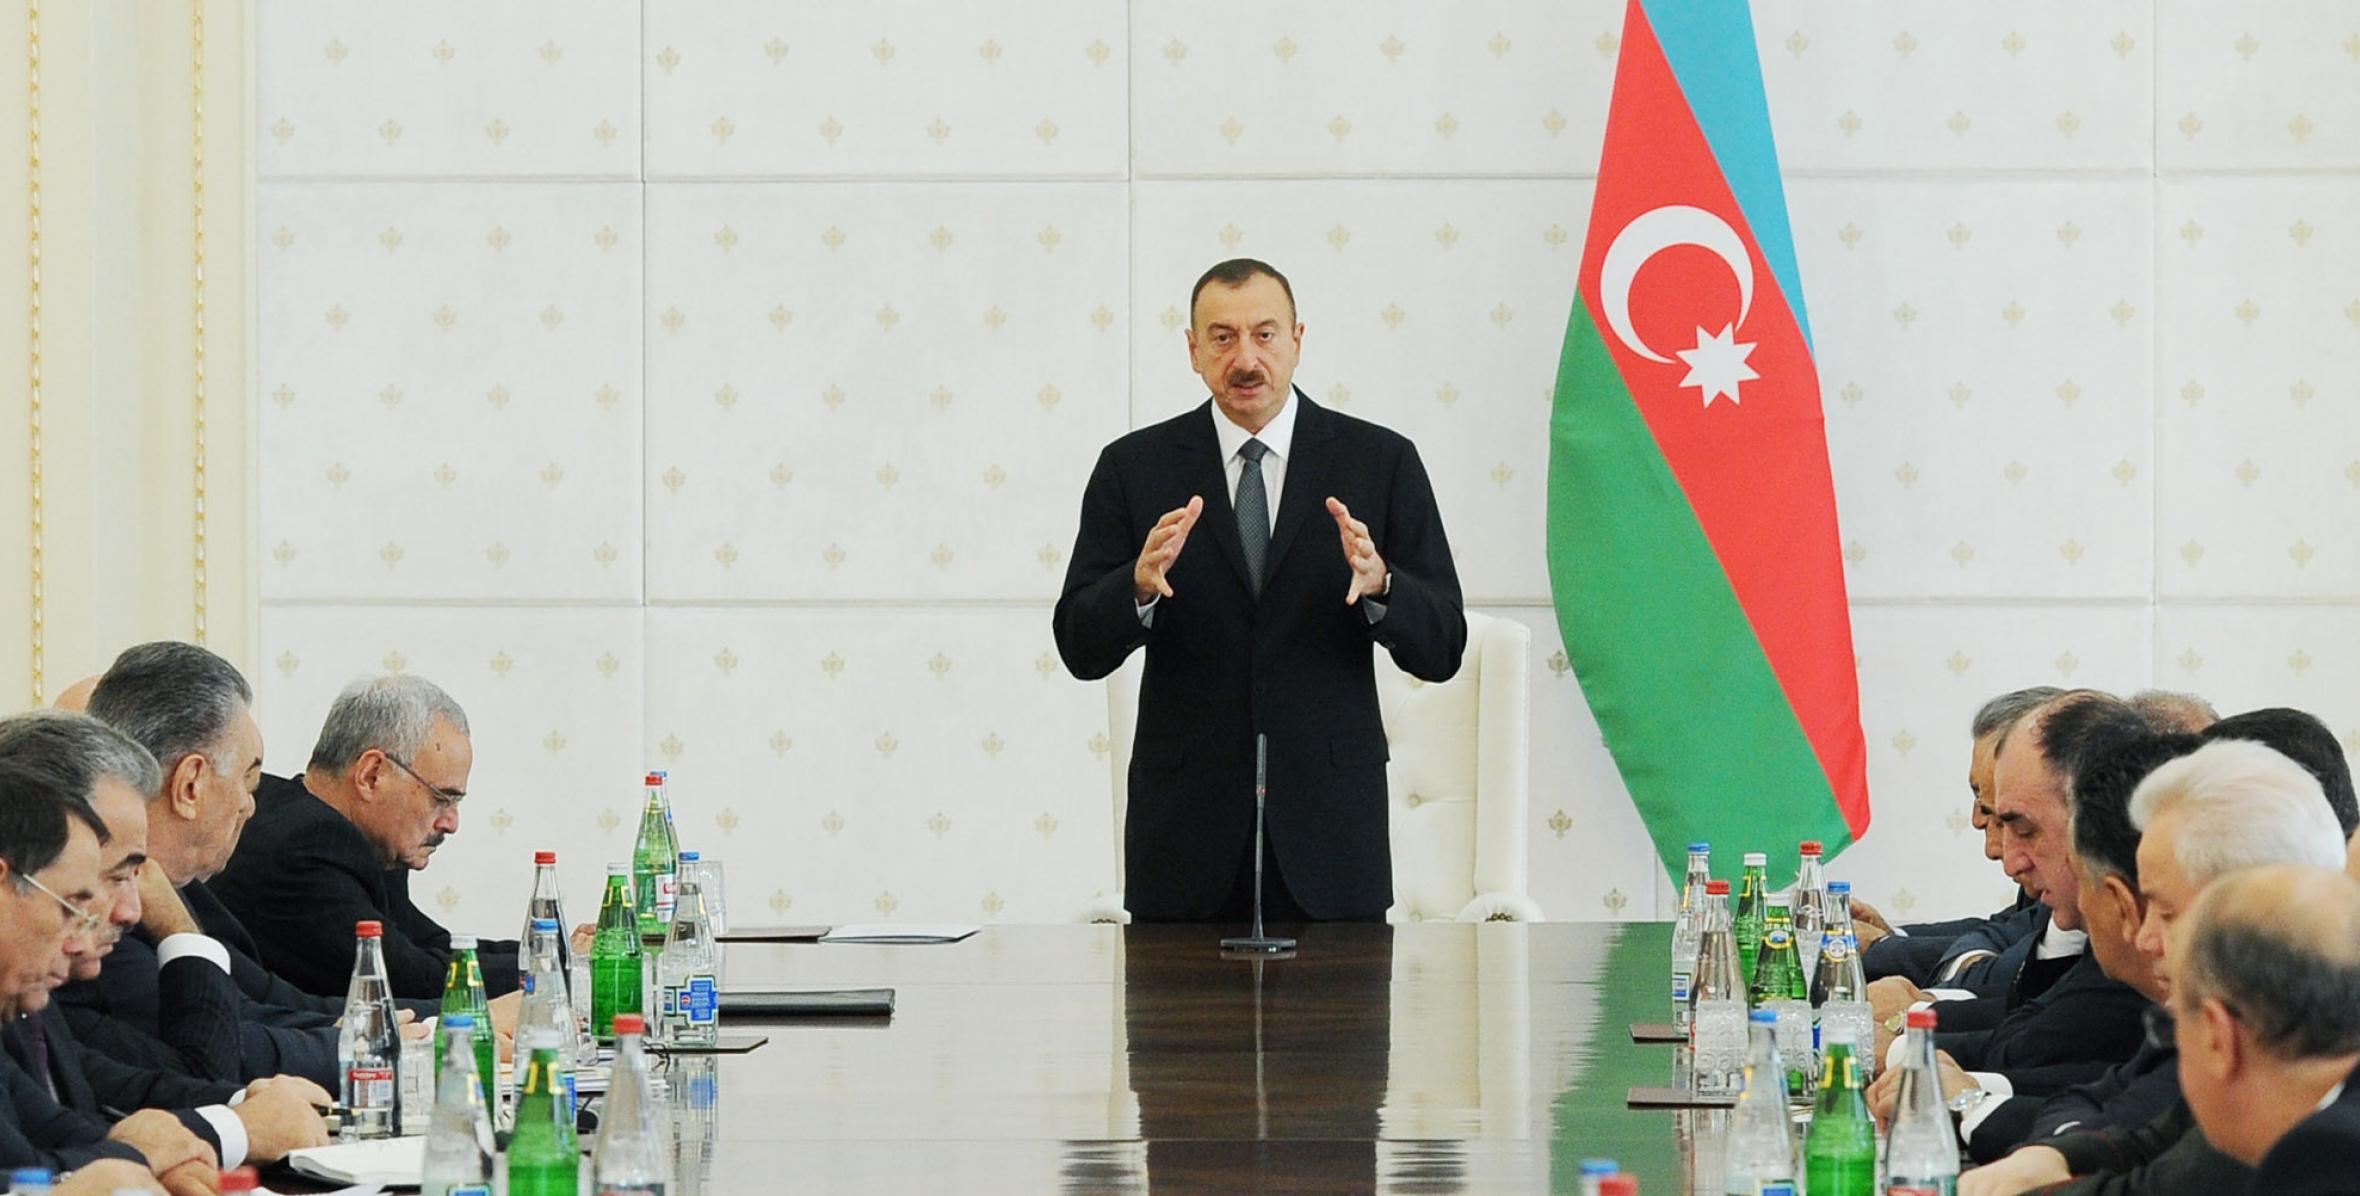 Вступительная речь Ильхама Алиева на заседание Кабинета Министров, посвященное итогам социально-экономического развития за девять месяцев 2013 года и предстоящим задачам